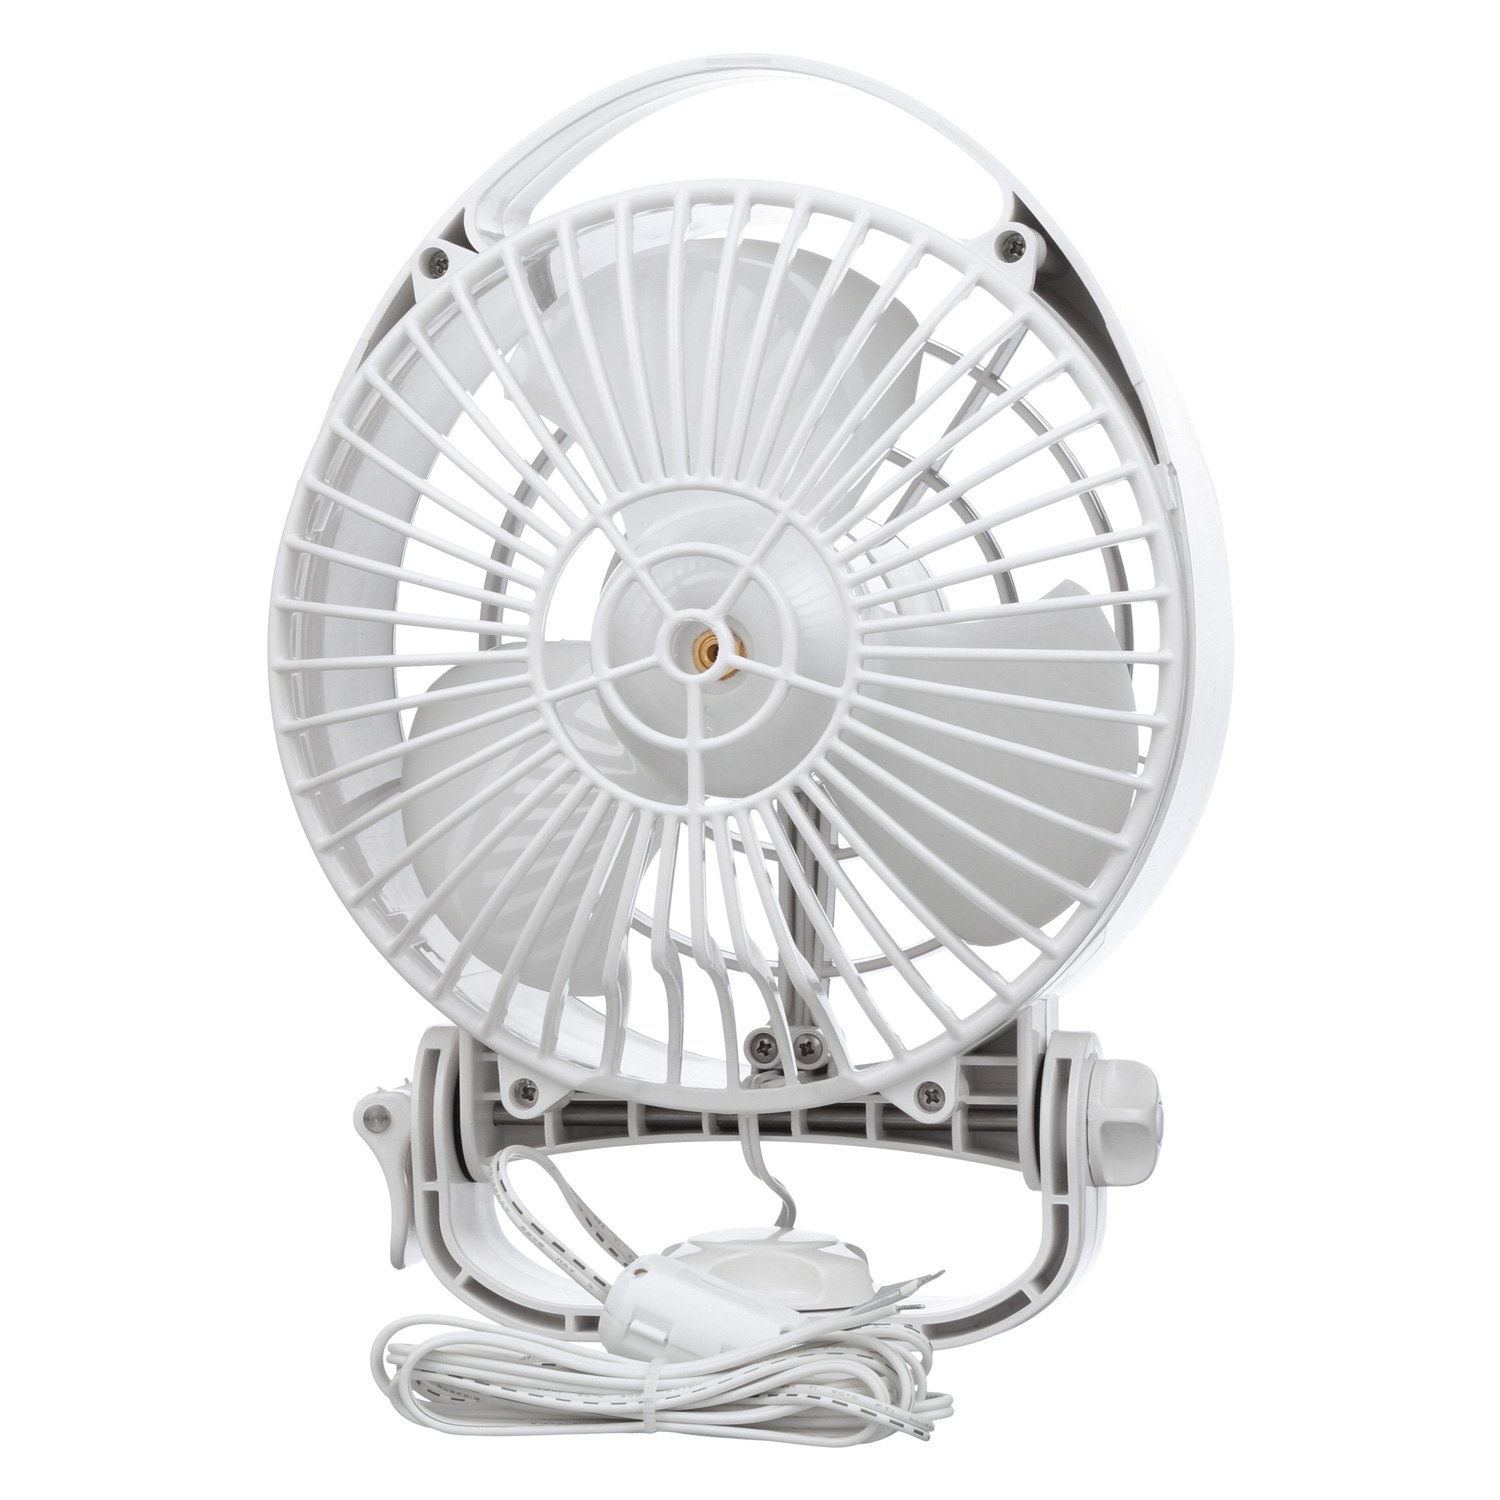 Fan 3 вентилятор. Вентилятор Кабинный. Fan Ventilator YS-2235. Antary Fan 3.